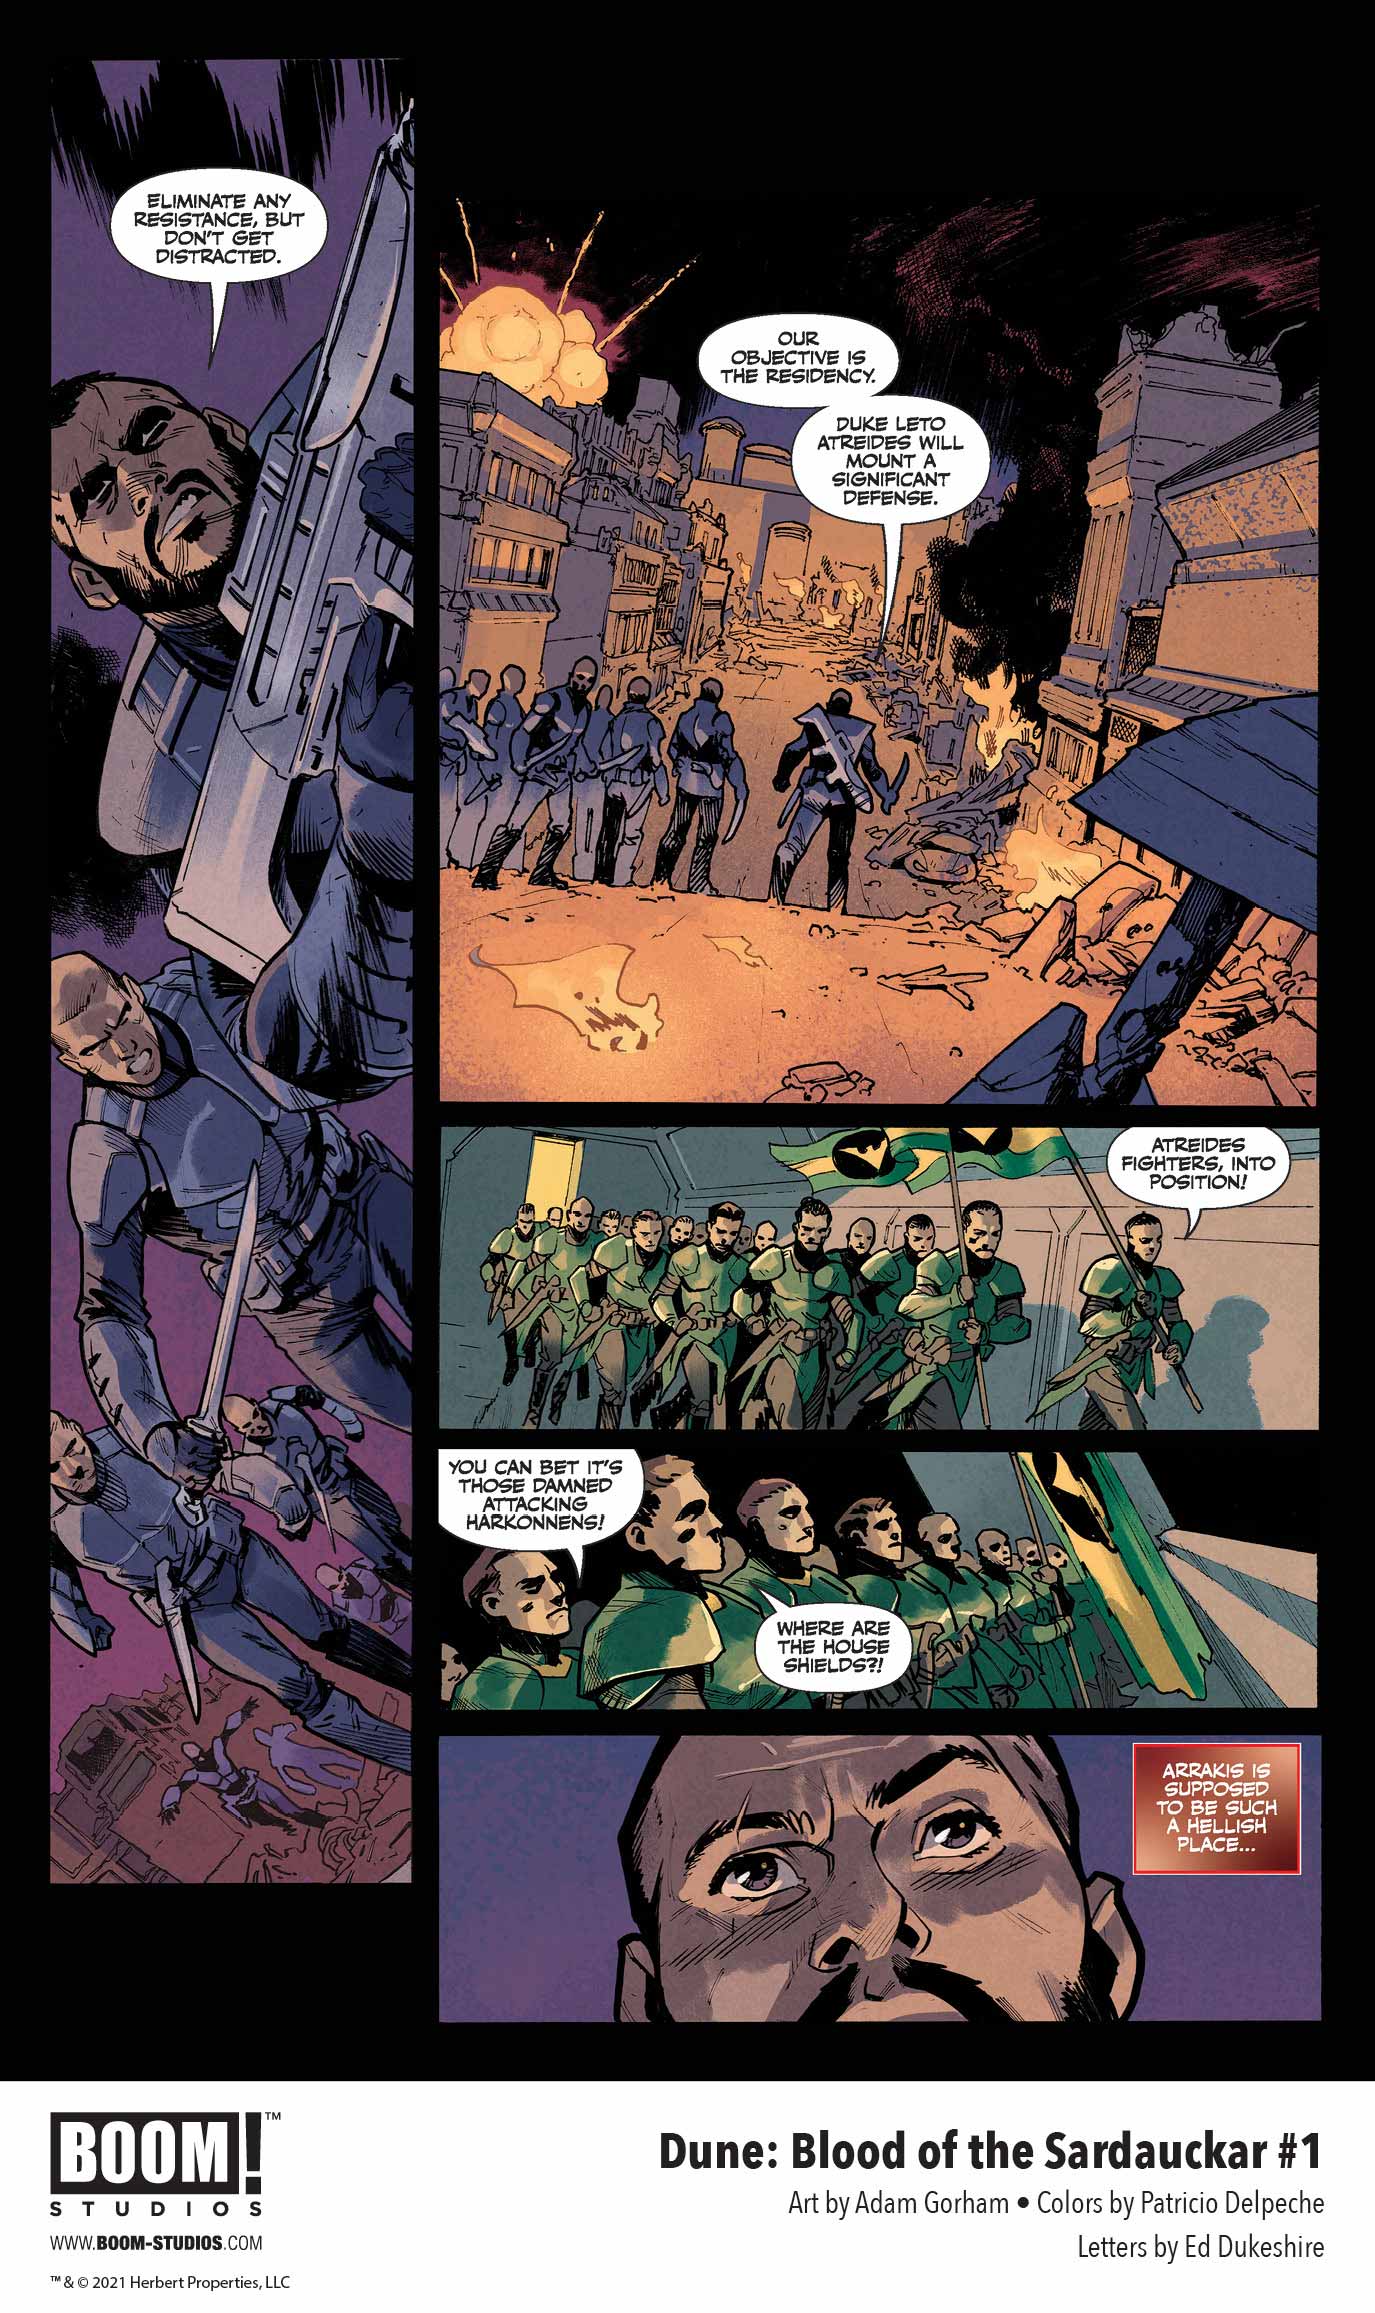 Dune: Blood of the Sardaukar comic book, preview page 4.